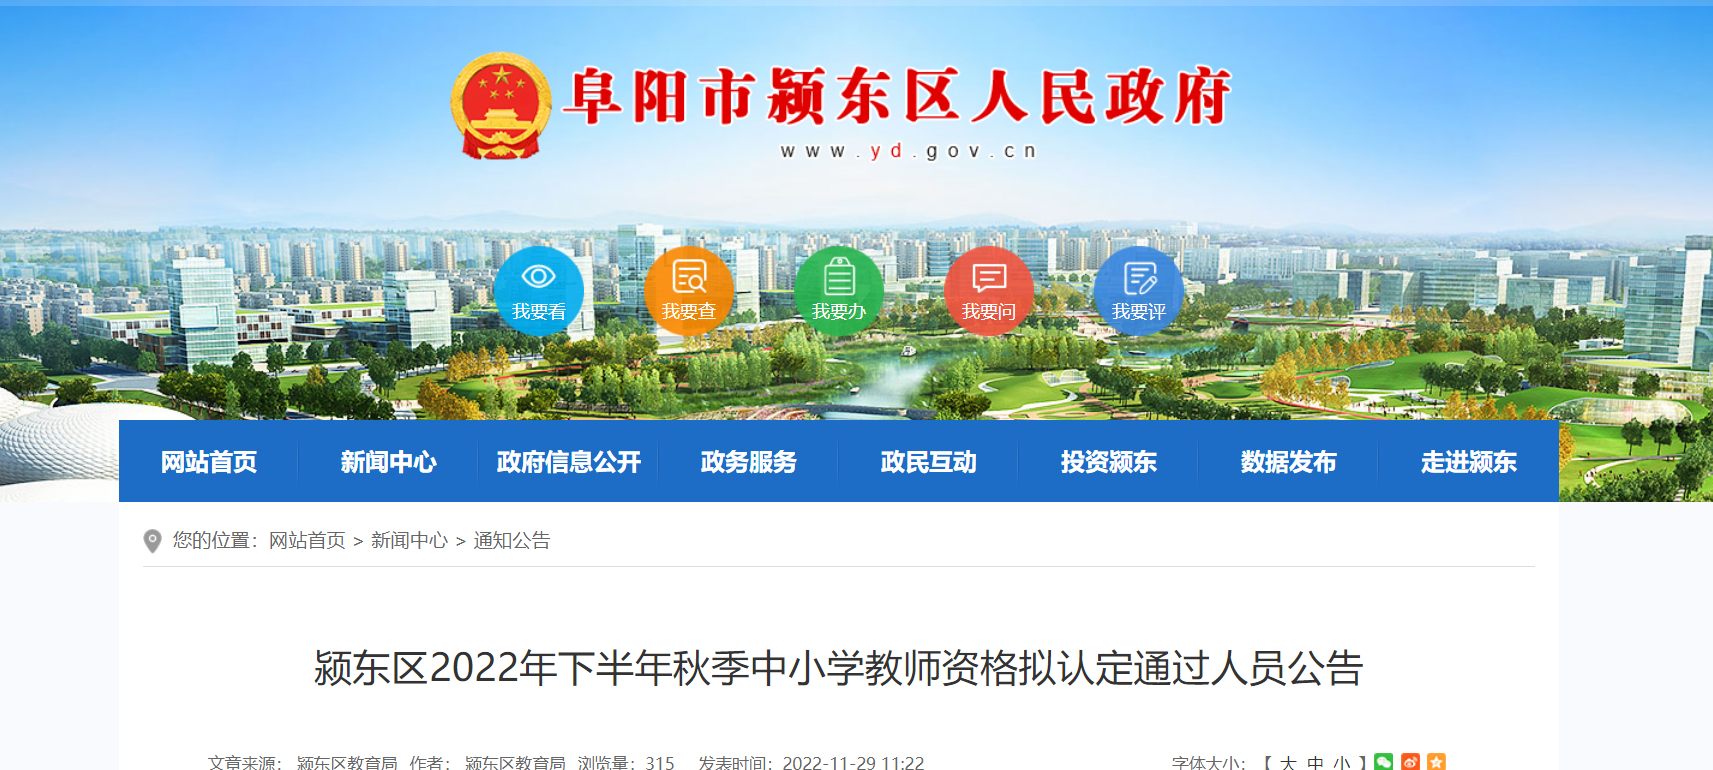 2022年下半年安徽阜阳颍东区中小学教师资格拟认定通过人员公告